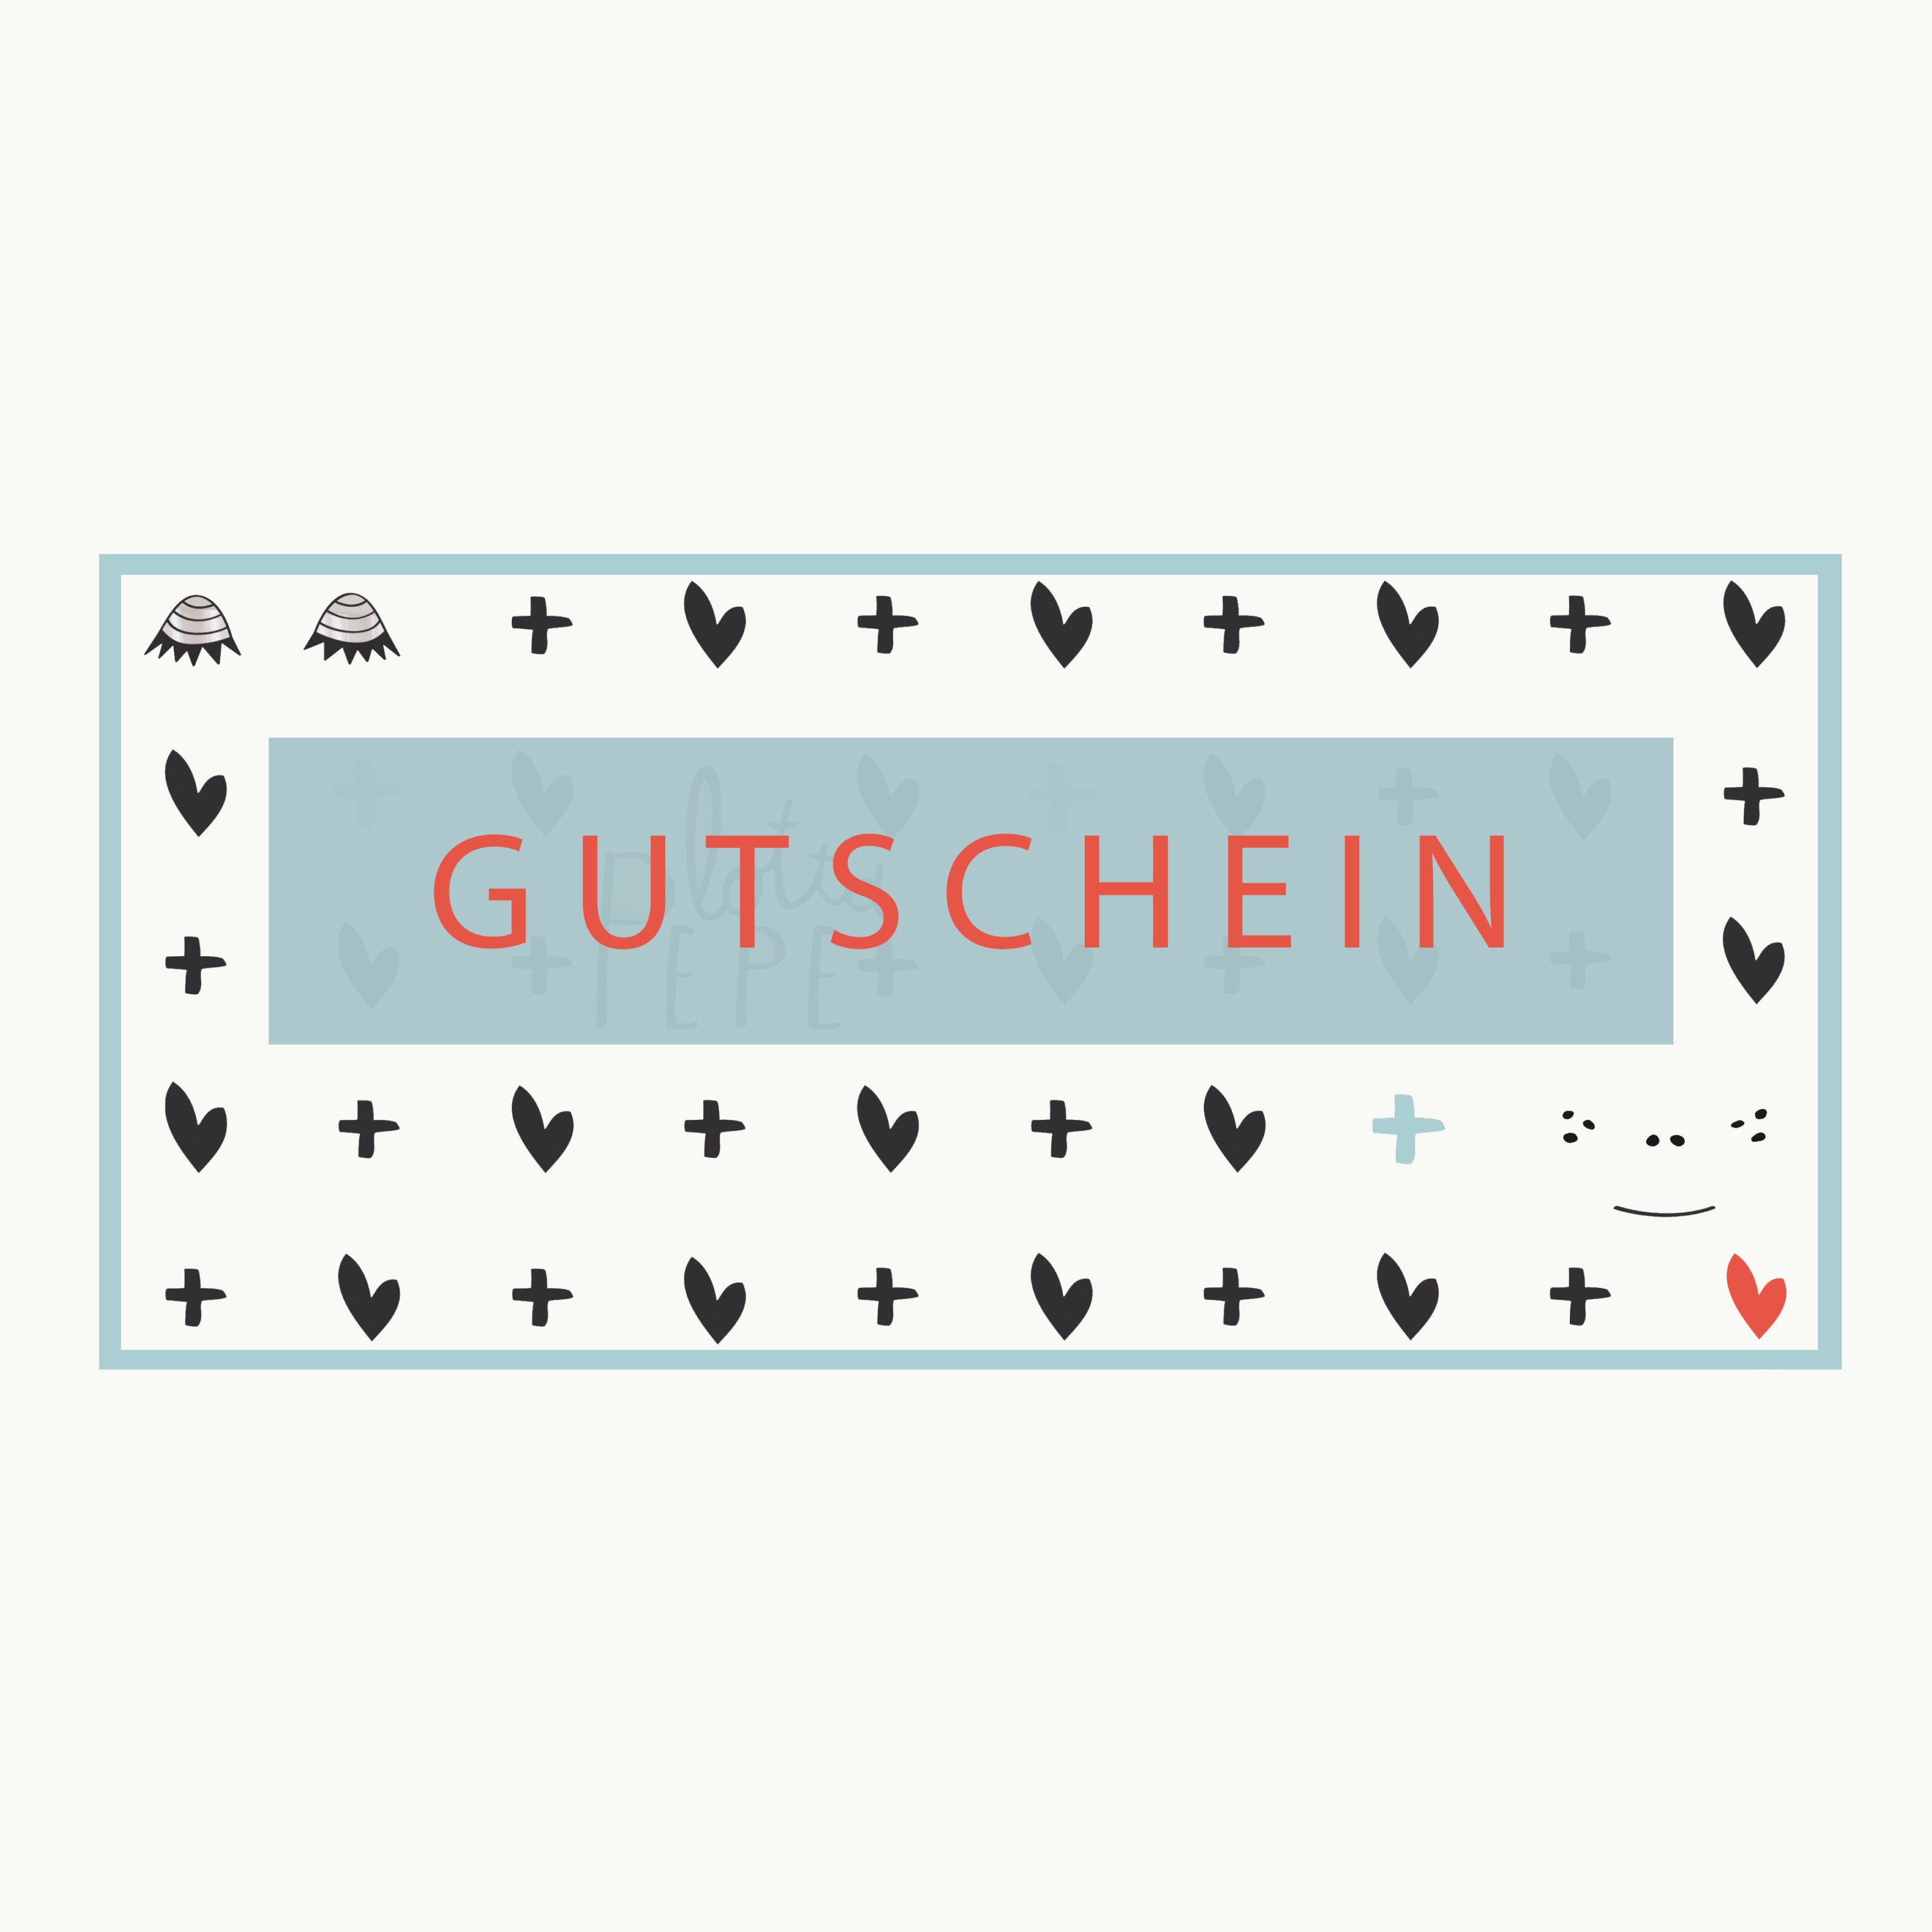 GUTSCHEIN